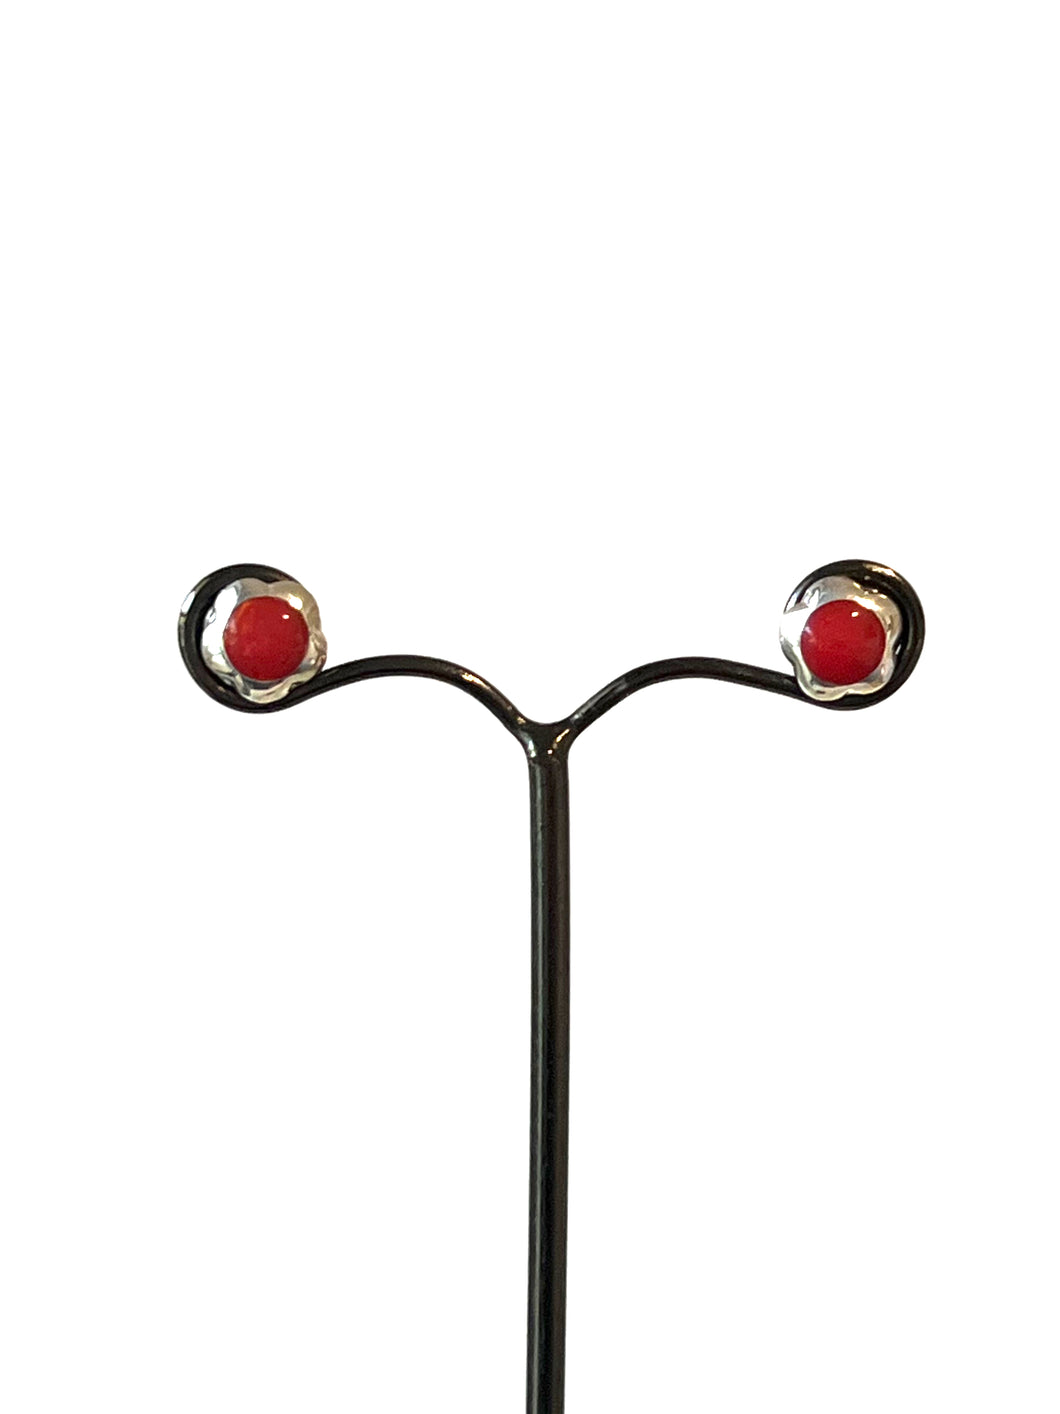 Red Flower Shape Stud Earrings set in Sterling Silver